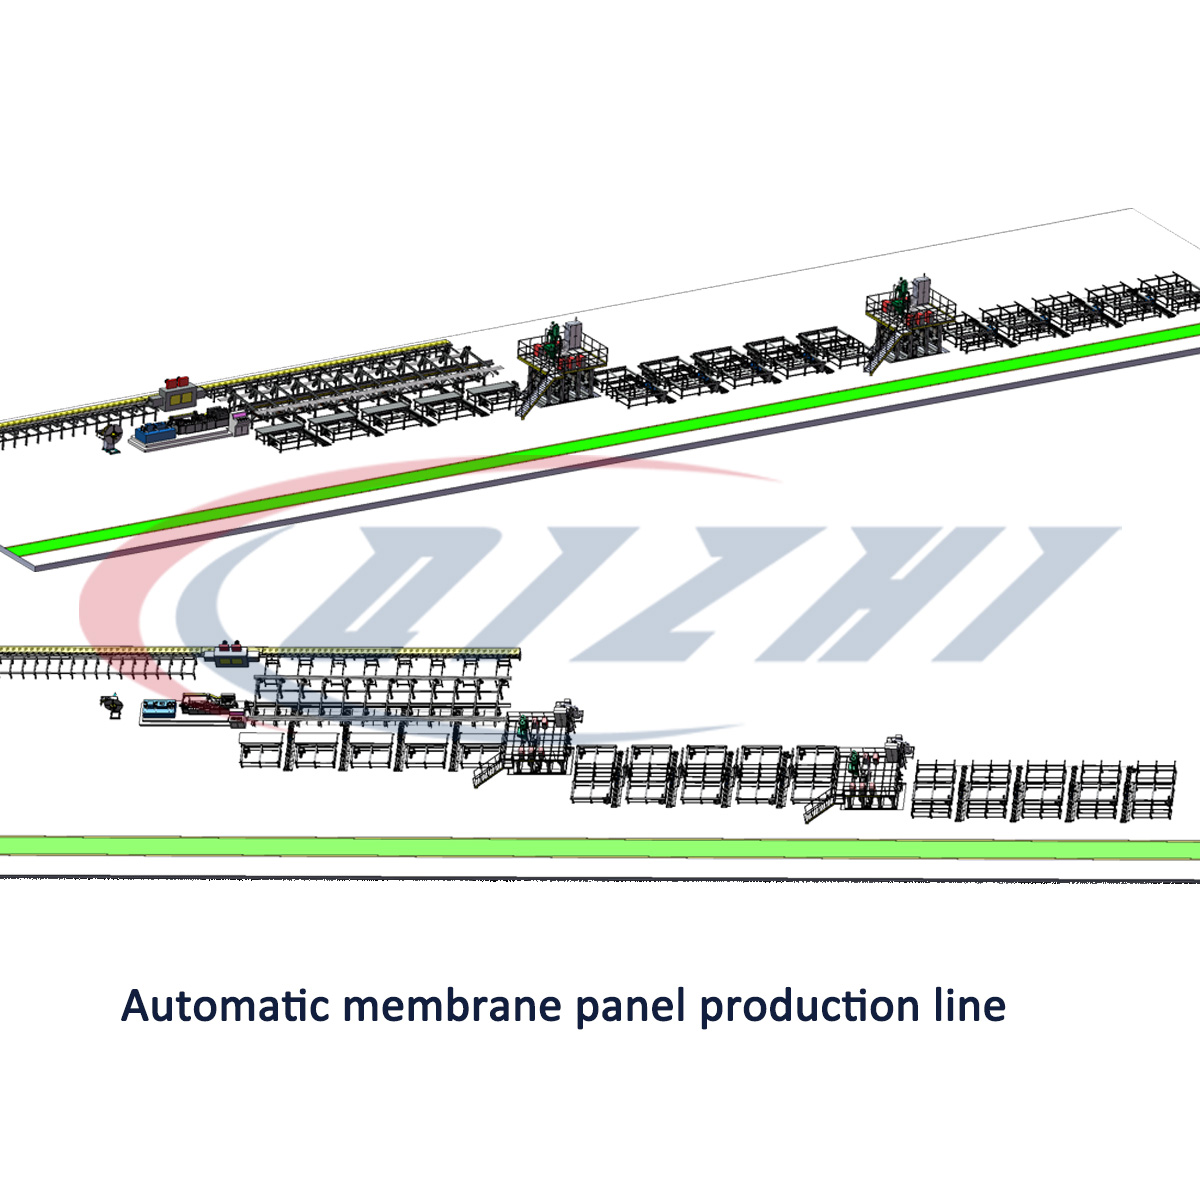 Automatic membrane panel production line